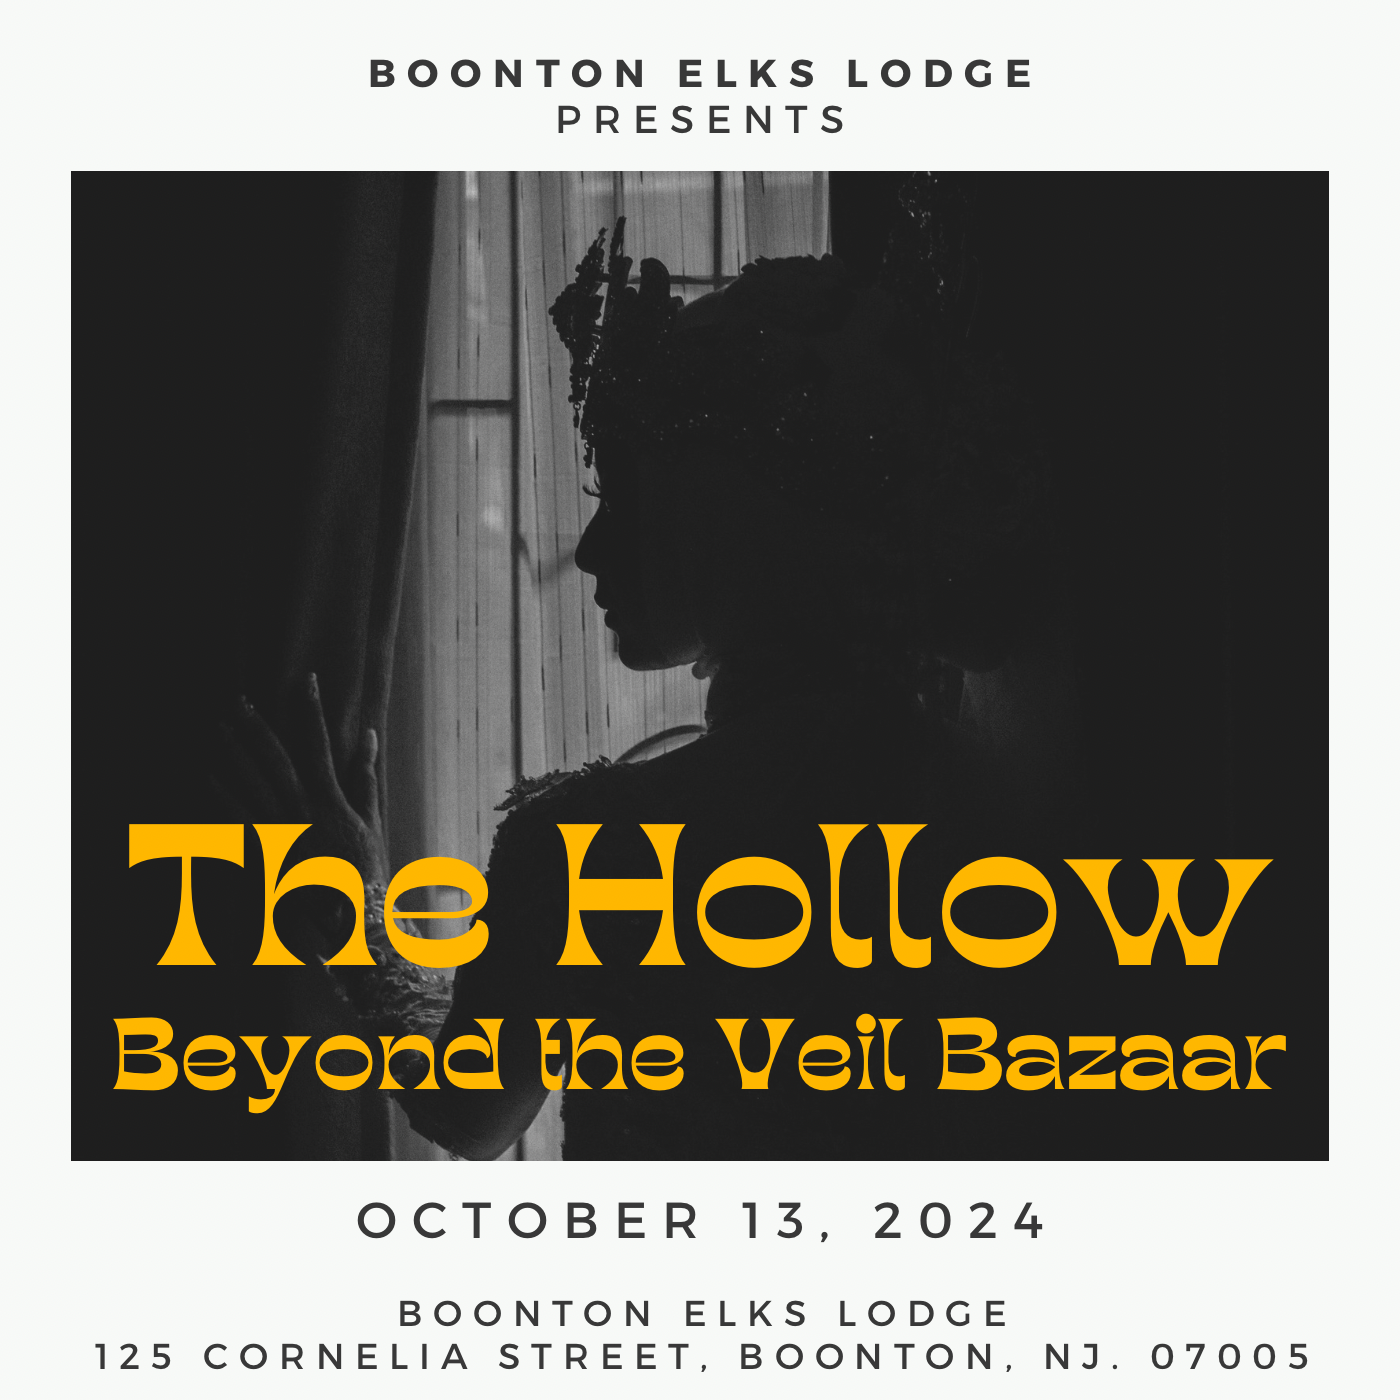 The Hollow Beyond the Veil Bazaar on oct. 13, 10:00@Boonton Elks Lodge #1405 - Achetez des billets et obtenez des informations surBoonton Elks Lodge 